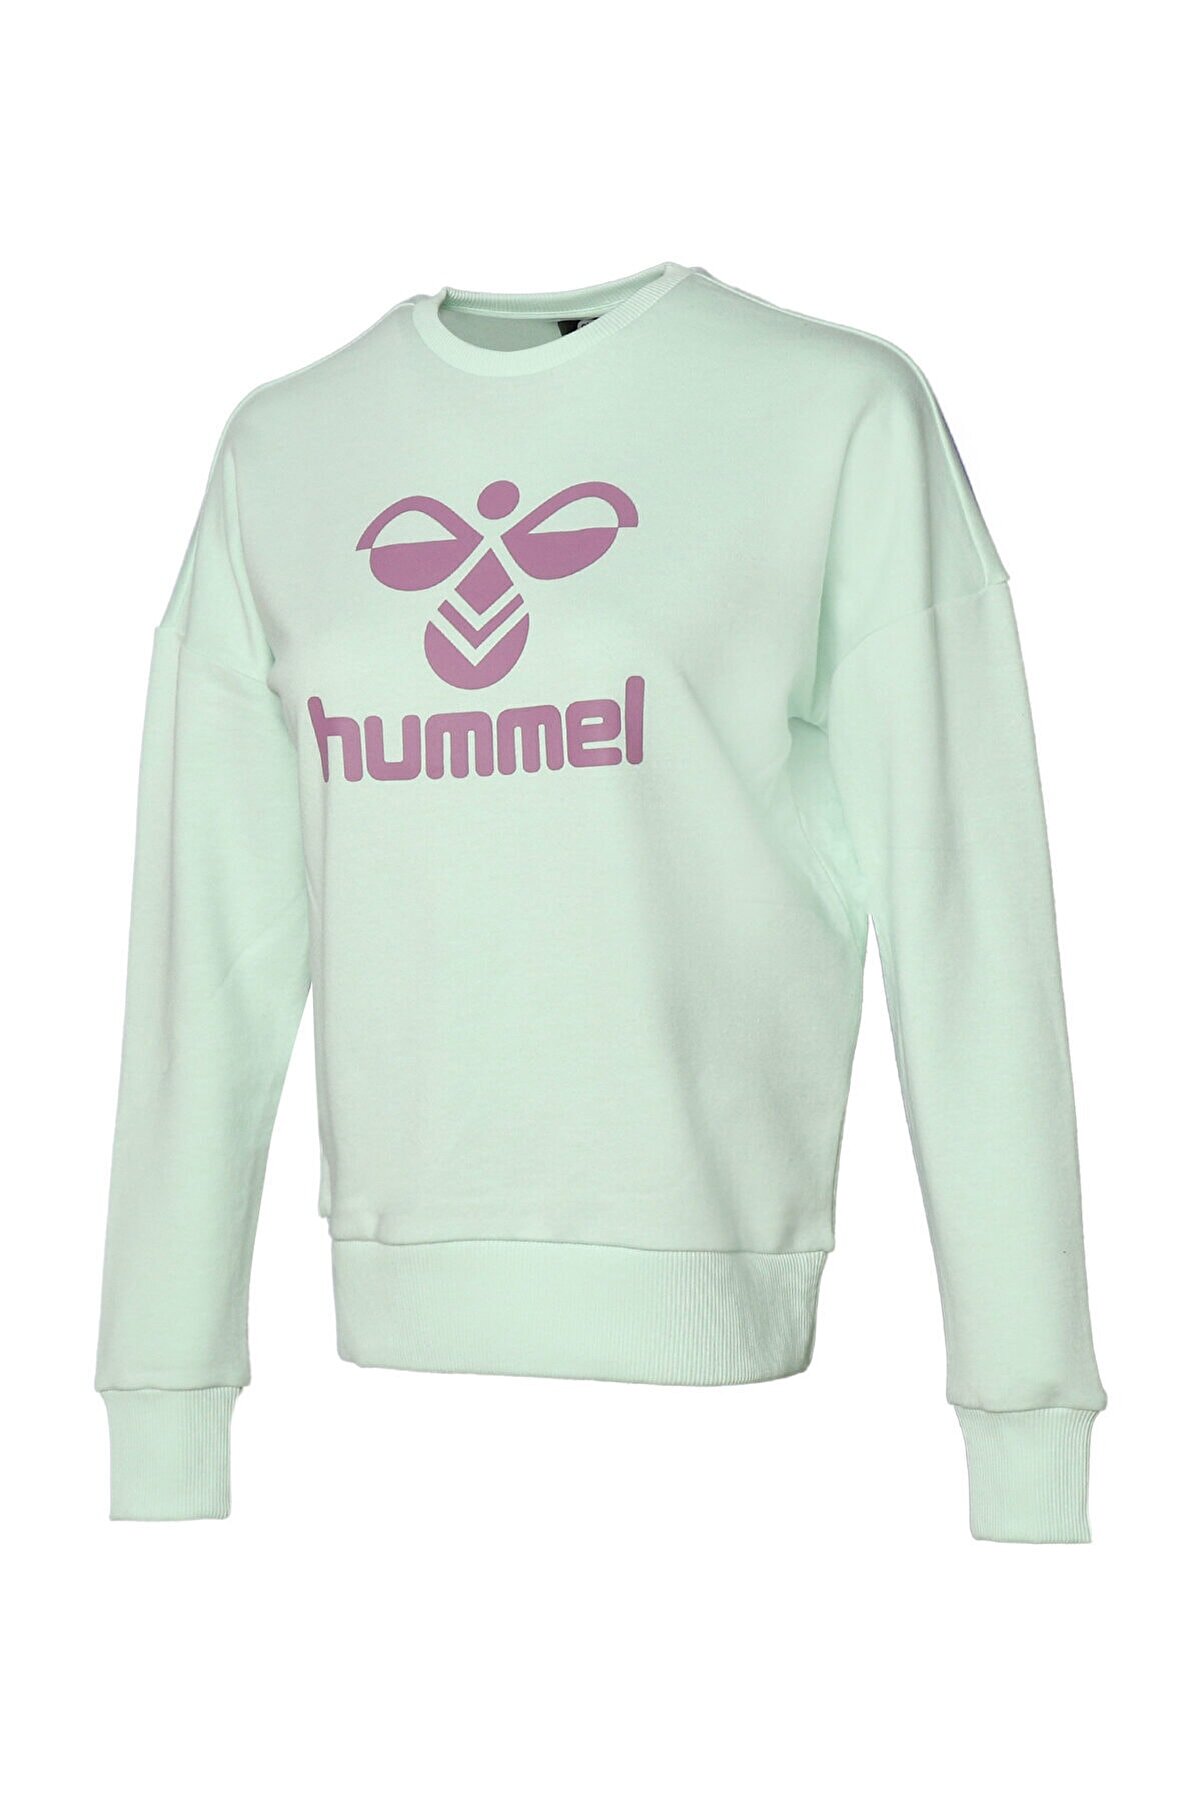 hummel Helsinge Mint Kadın Sweatshirt